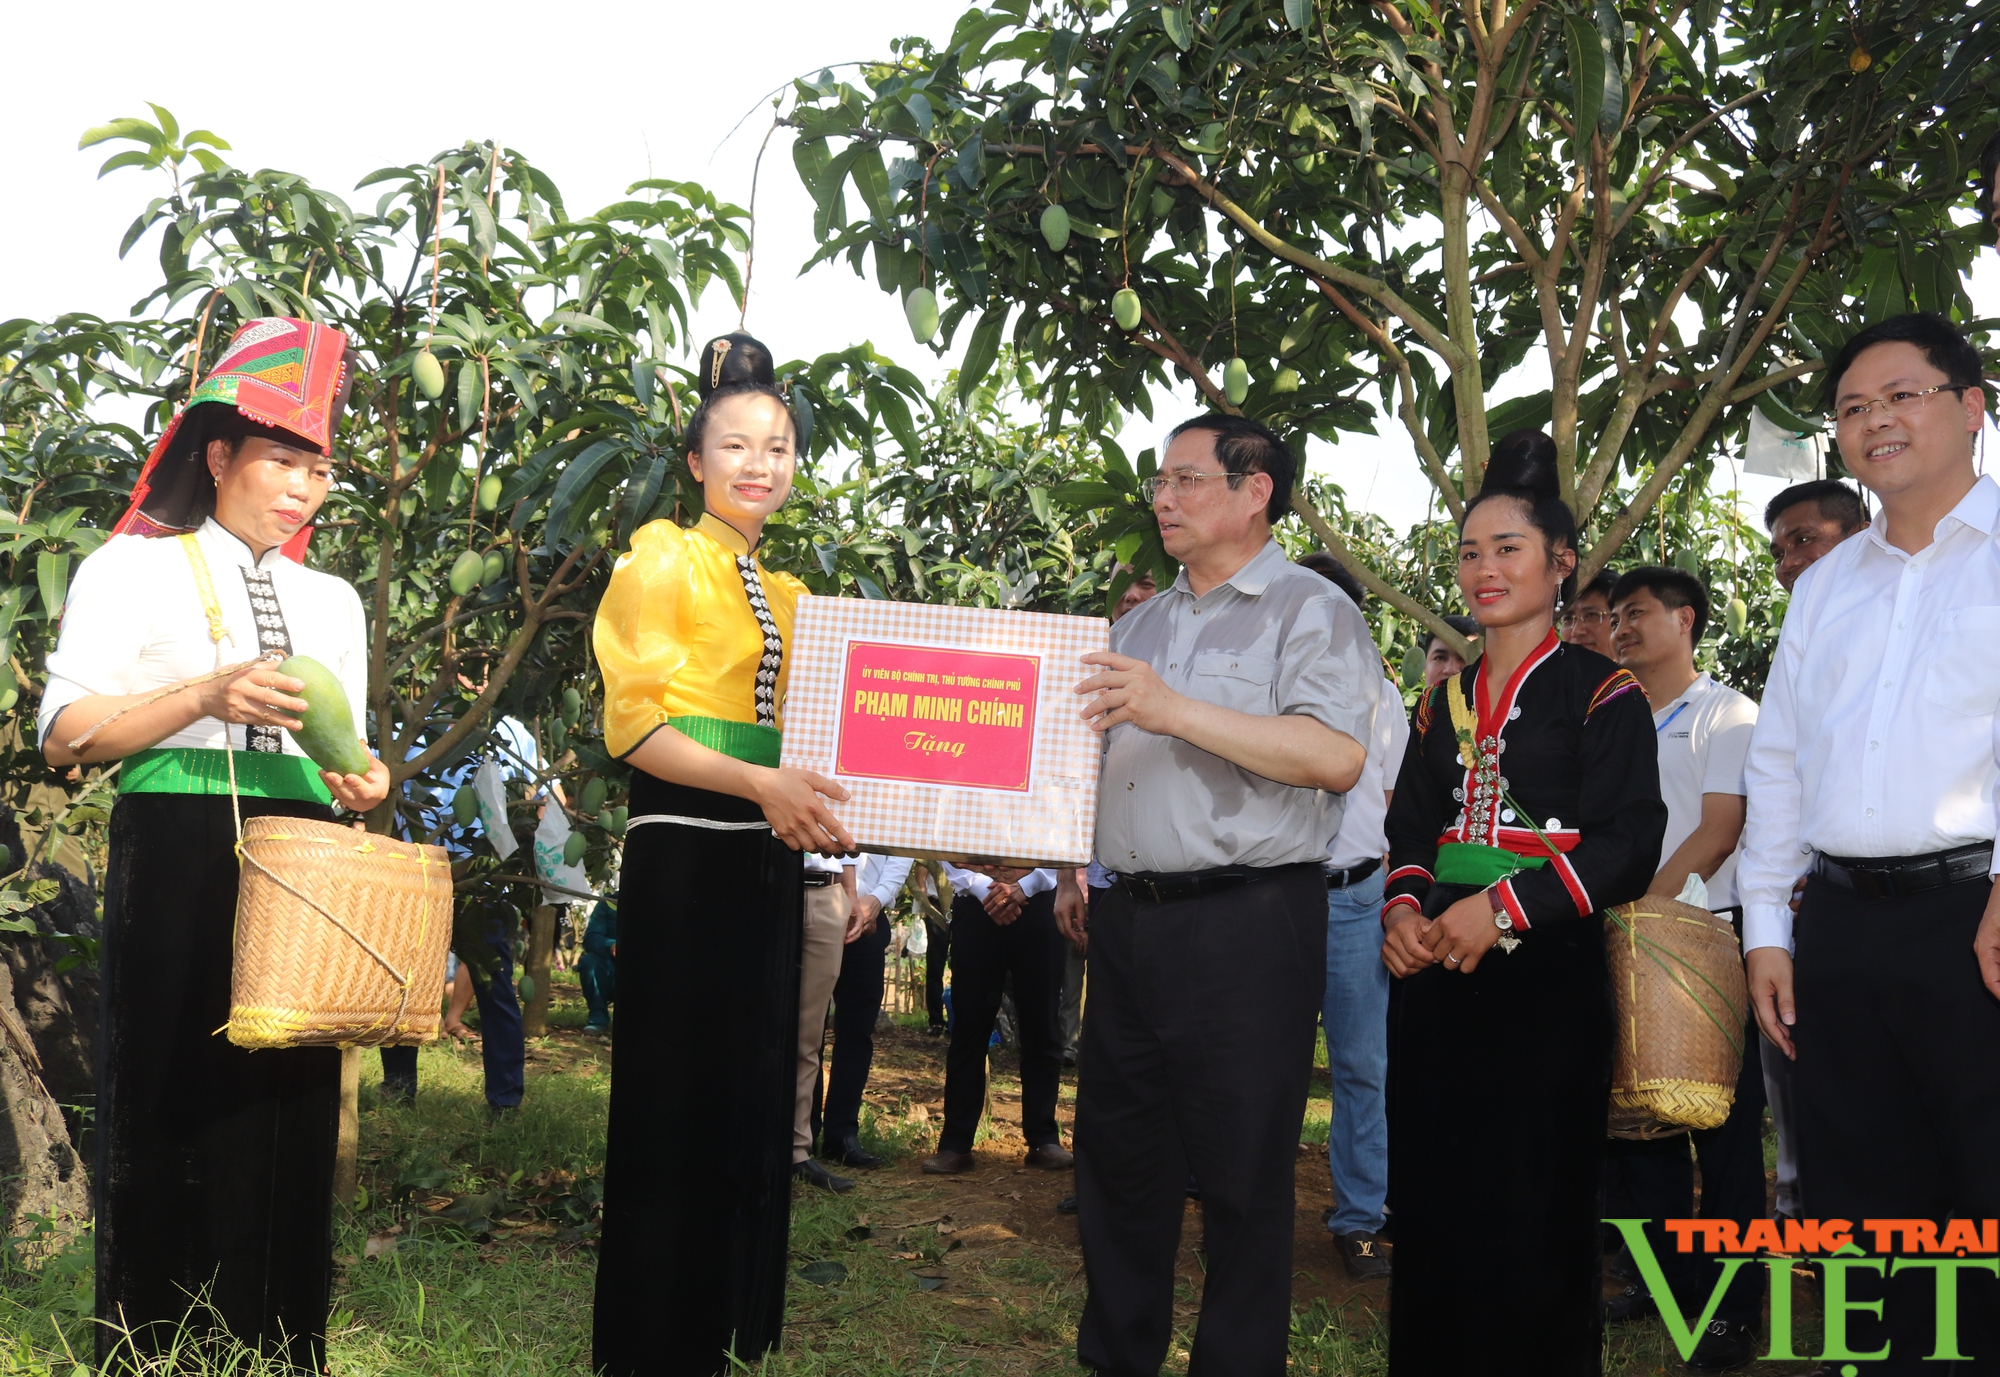 Thủ tướng Phạm Minh Chính chỉ ra 6 vấn đề cần hỗ trợ nông dân trong sản xuất nông nghiệp ở Sơn La - Ảnh 4.